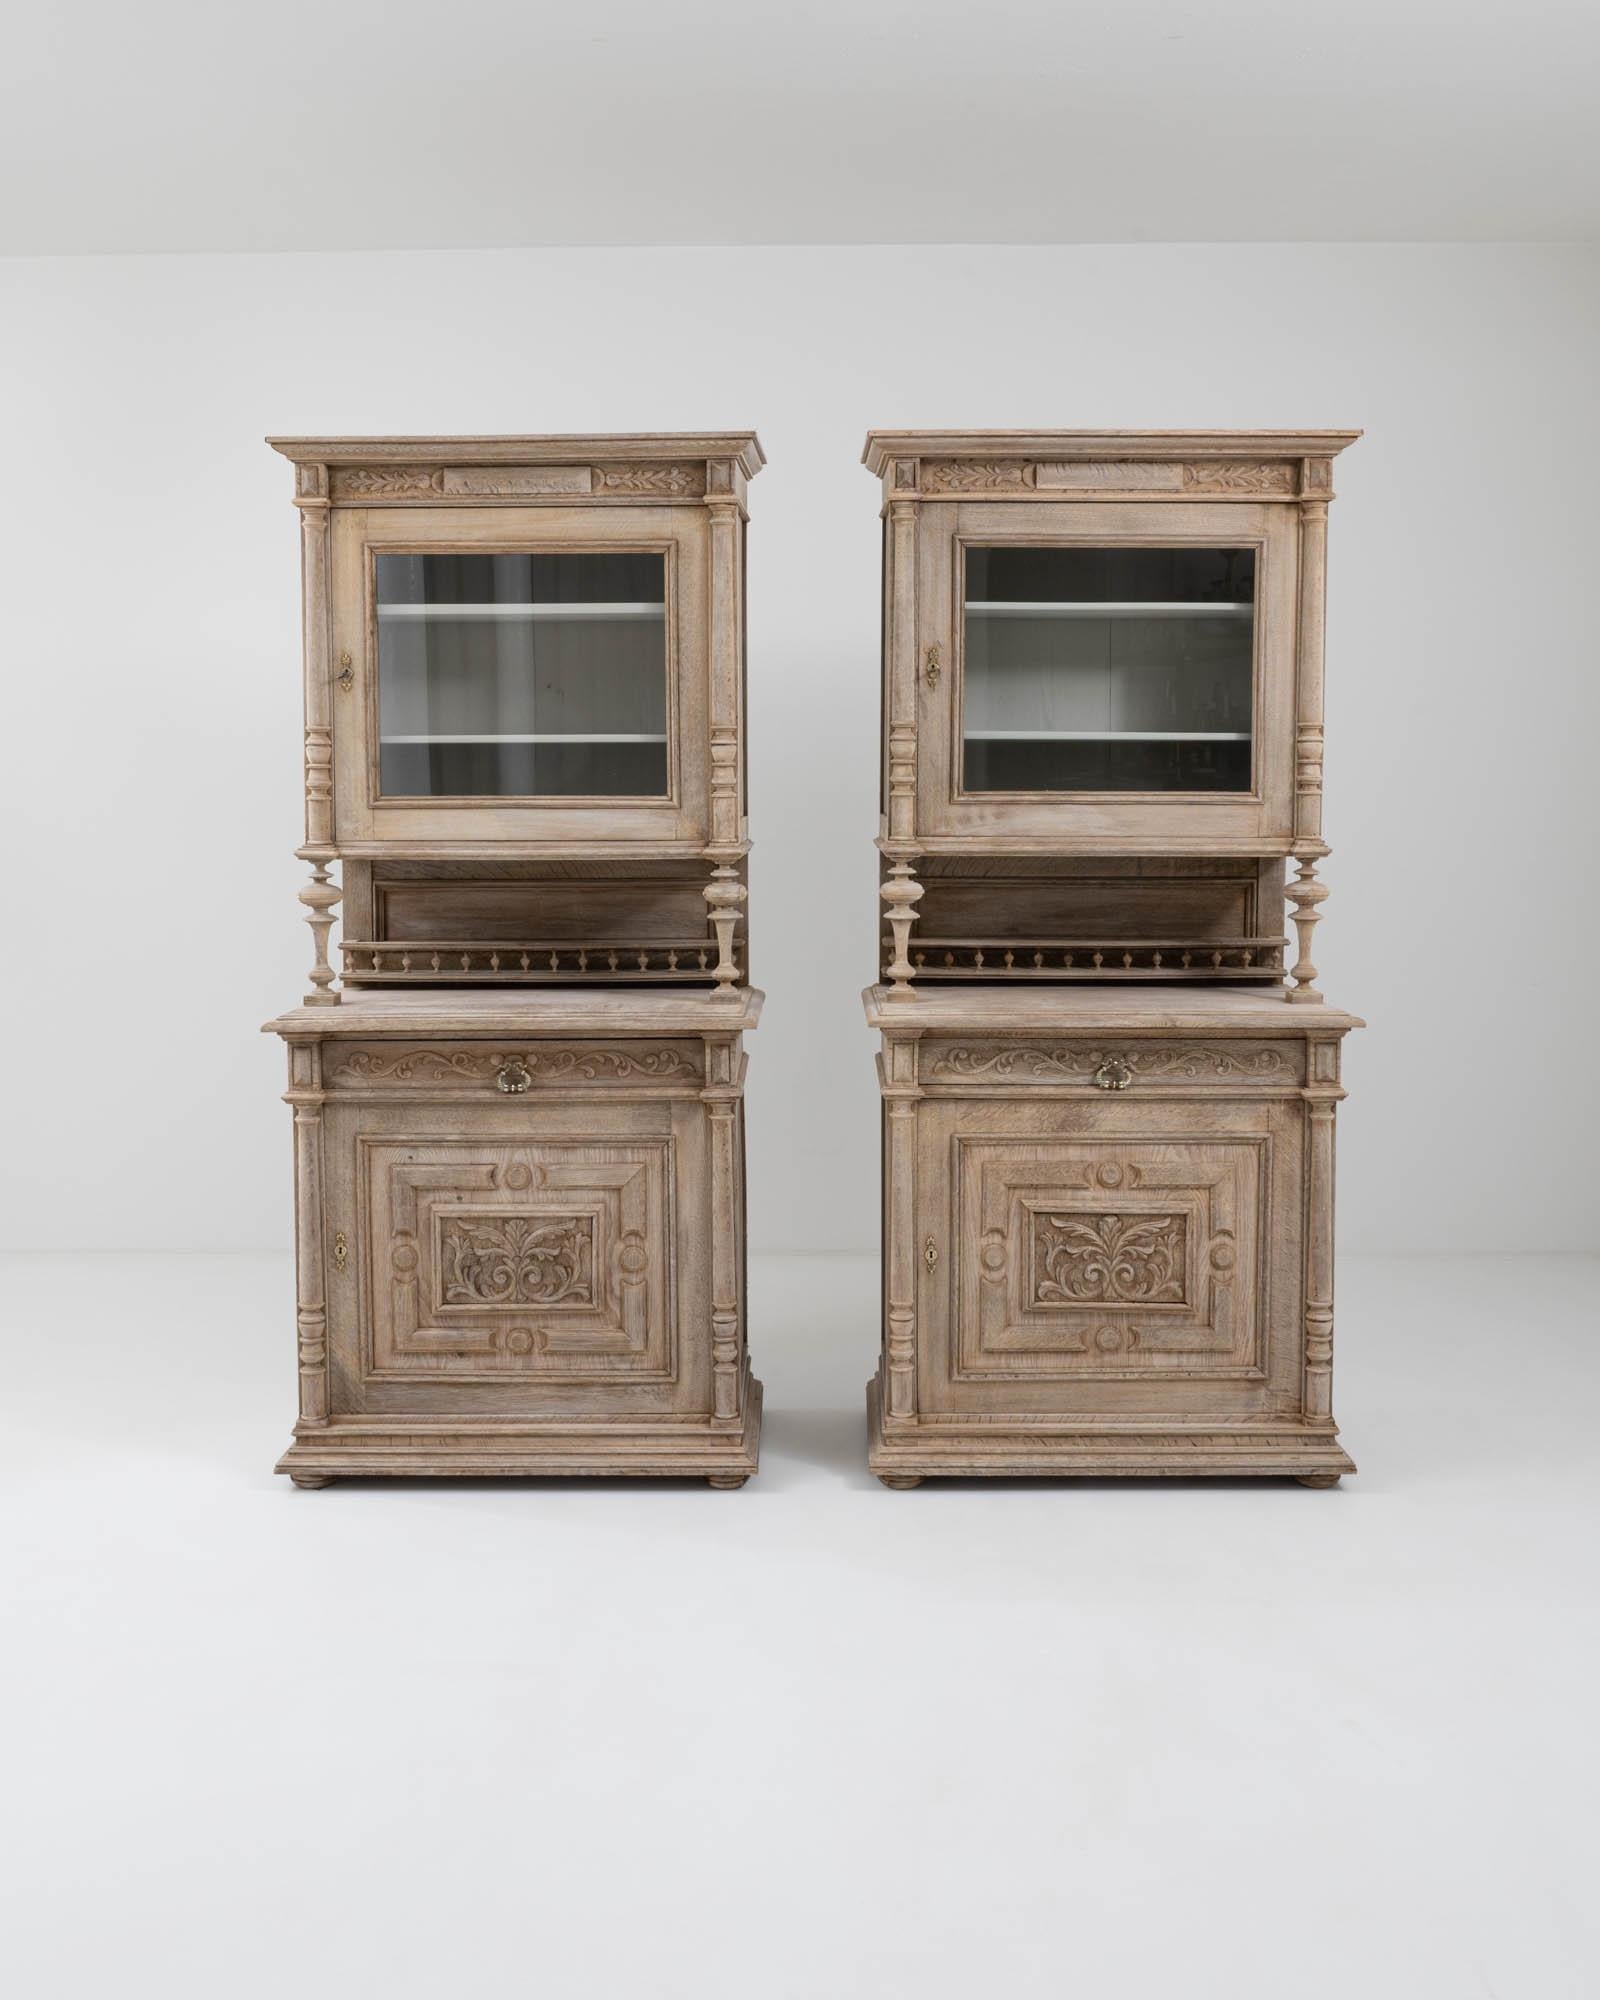 Diese beiden belgischen Vitrinen aus Eichenholz aus der Zeit um 1900 bestechen durch den eklektischen Reichtum ihrer dekorativen Elemente. Diese Vitrinen verfügen über neoklassisch geformte Gesimse, geprägte Blattschnitzereien und meisterhaft